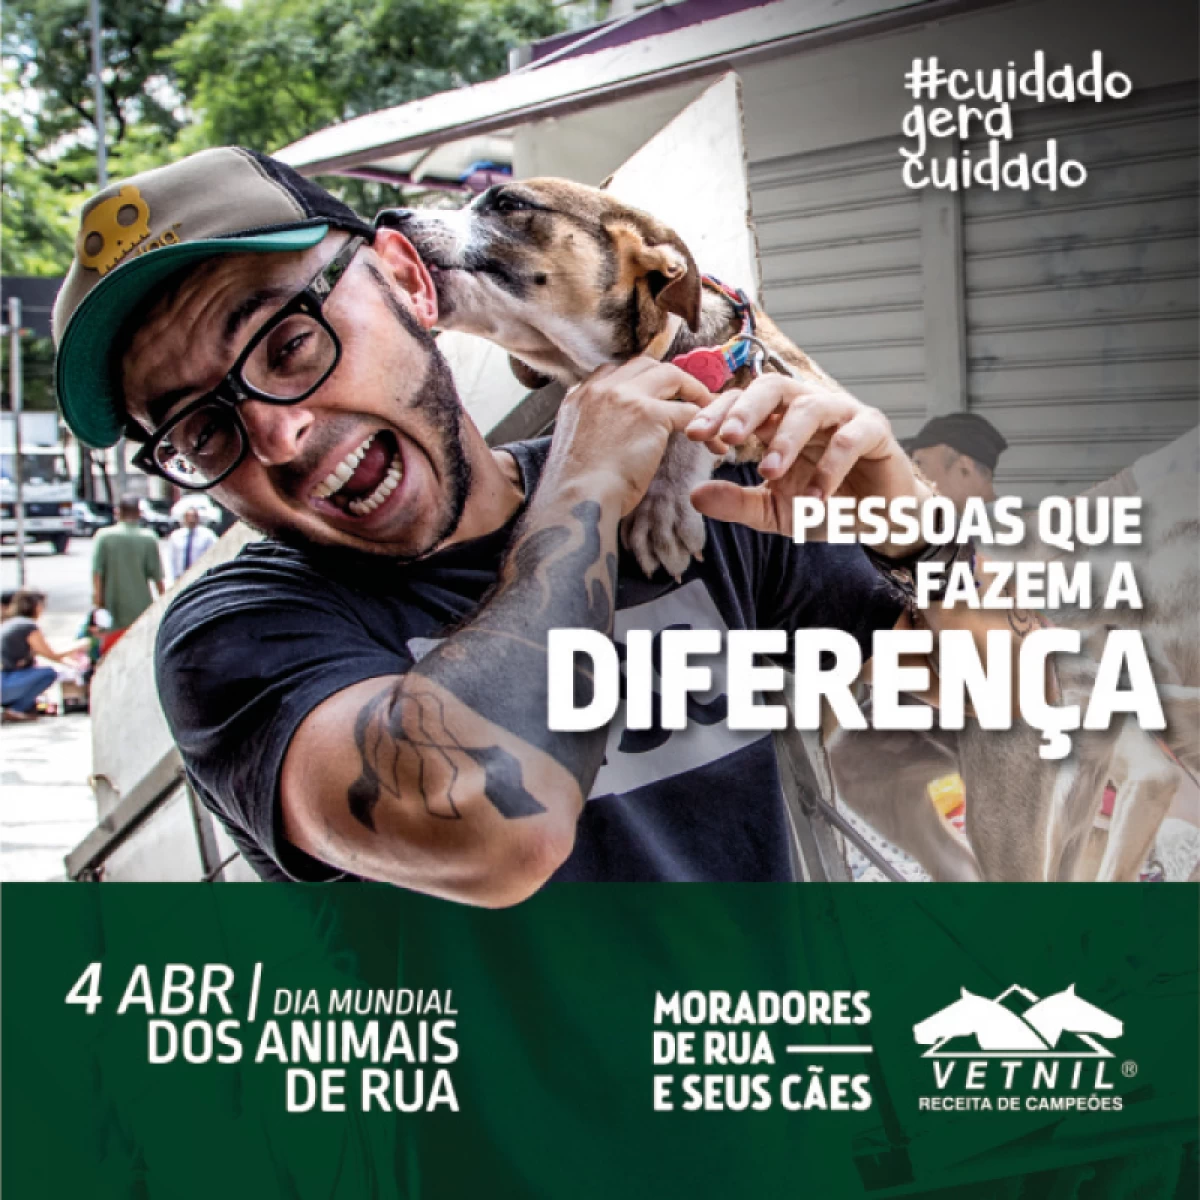 MRSC e o Dia Mundial dos Animais de Rua | Notícias Vetnil